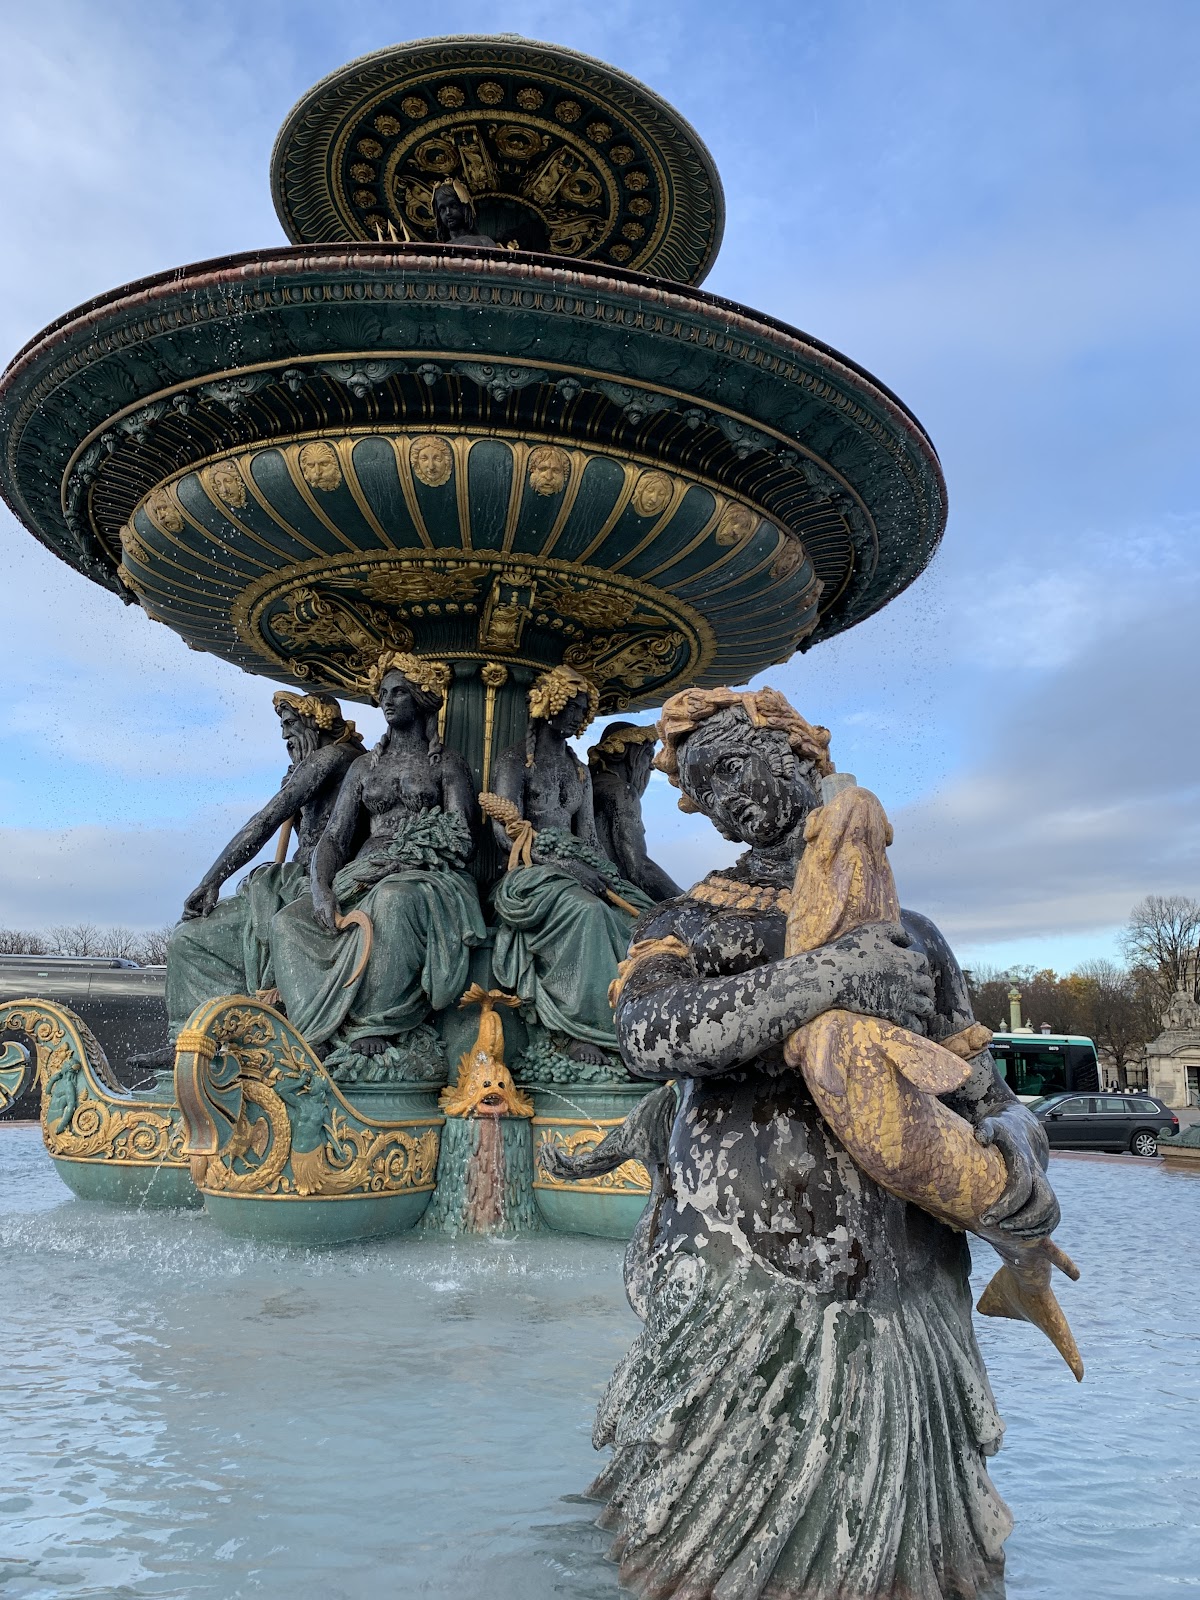 The Fountain on the Place de la Concorde